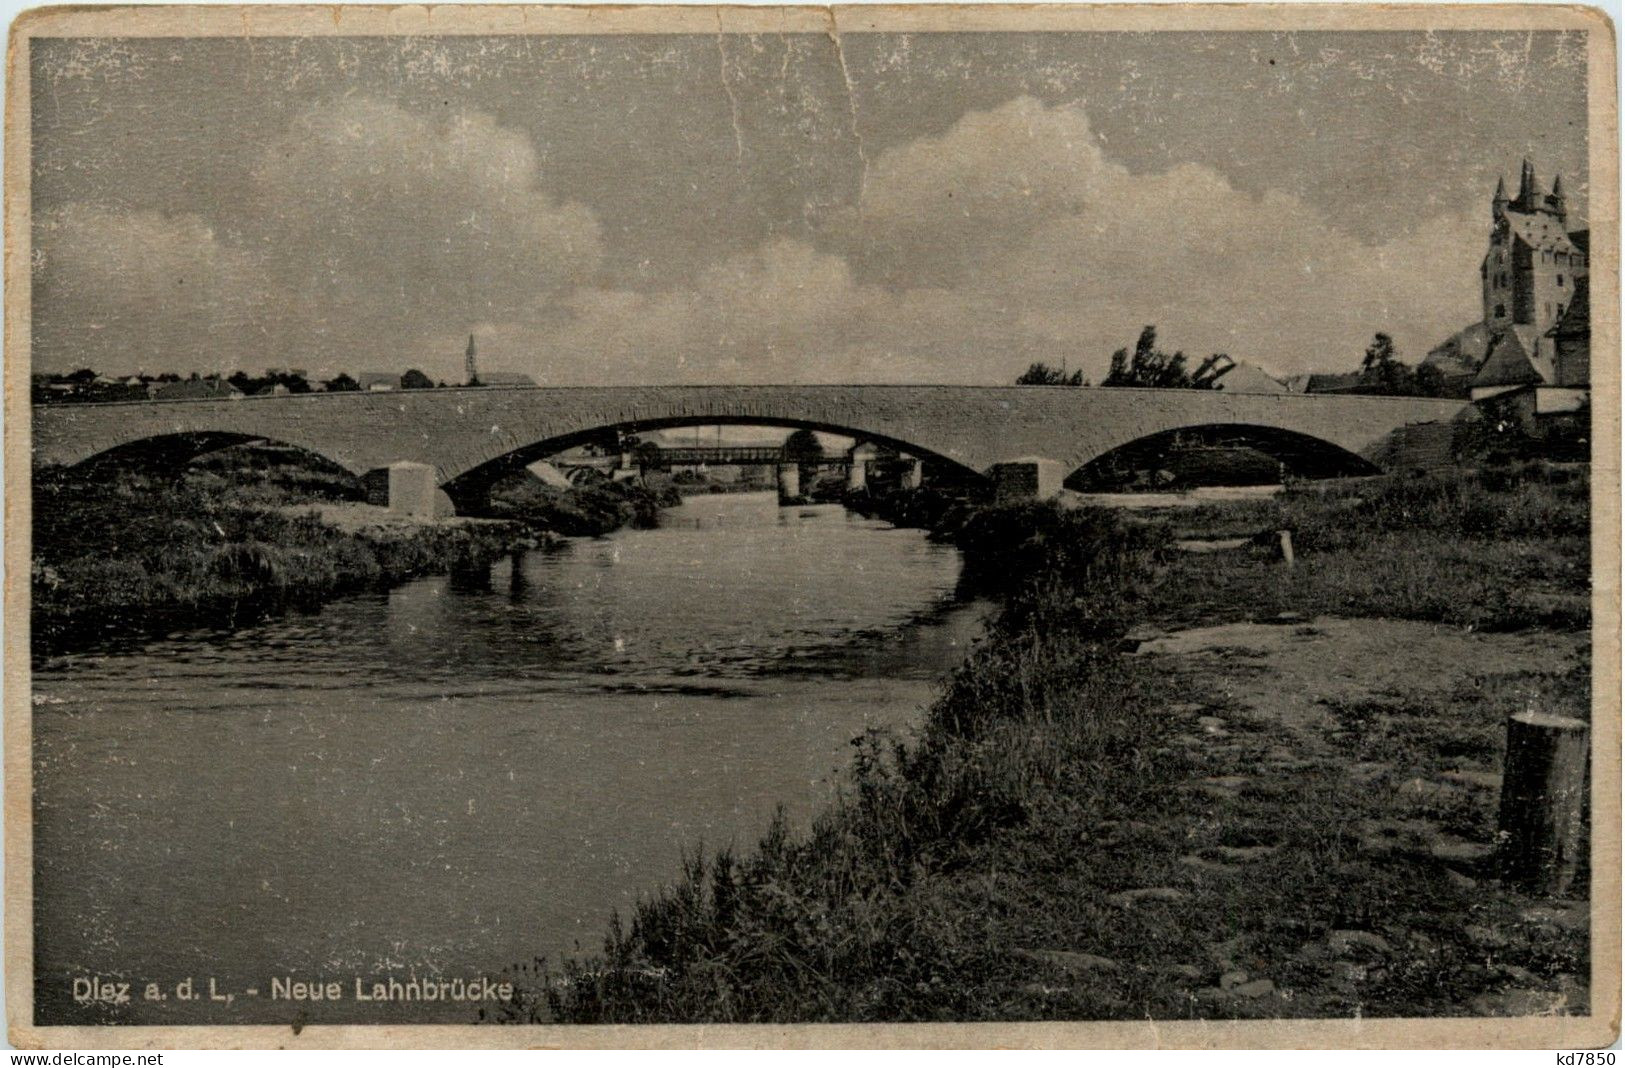 Diez Lahn - Neue Lahnbrücke - Diez